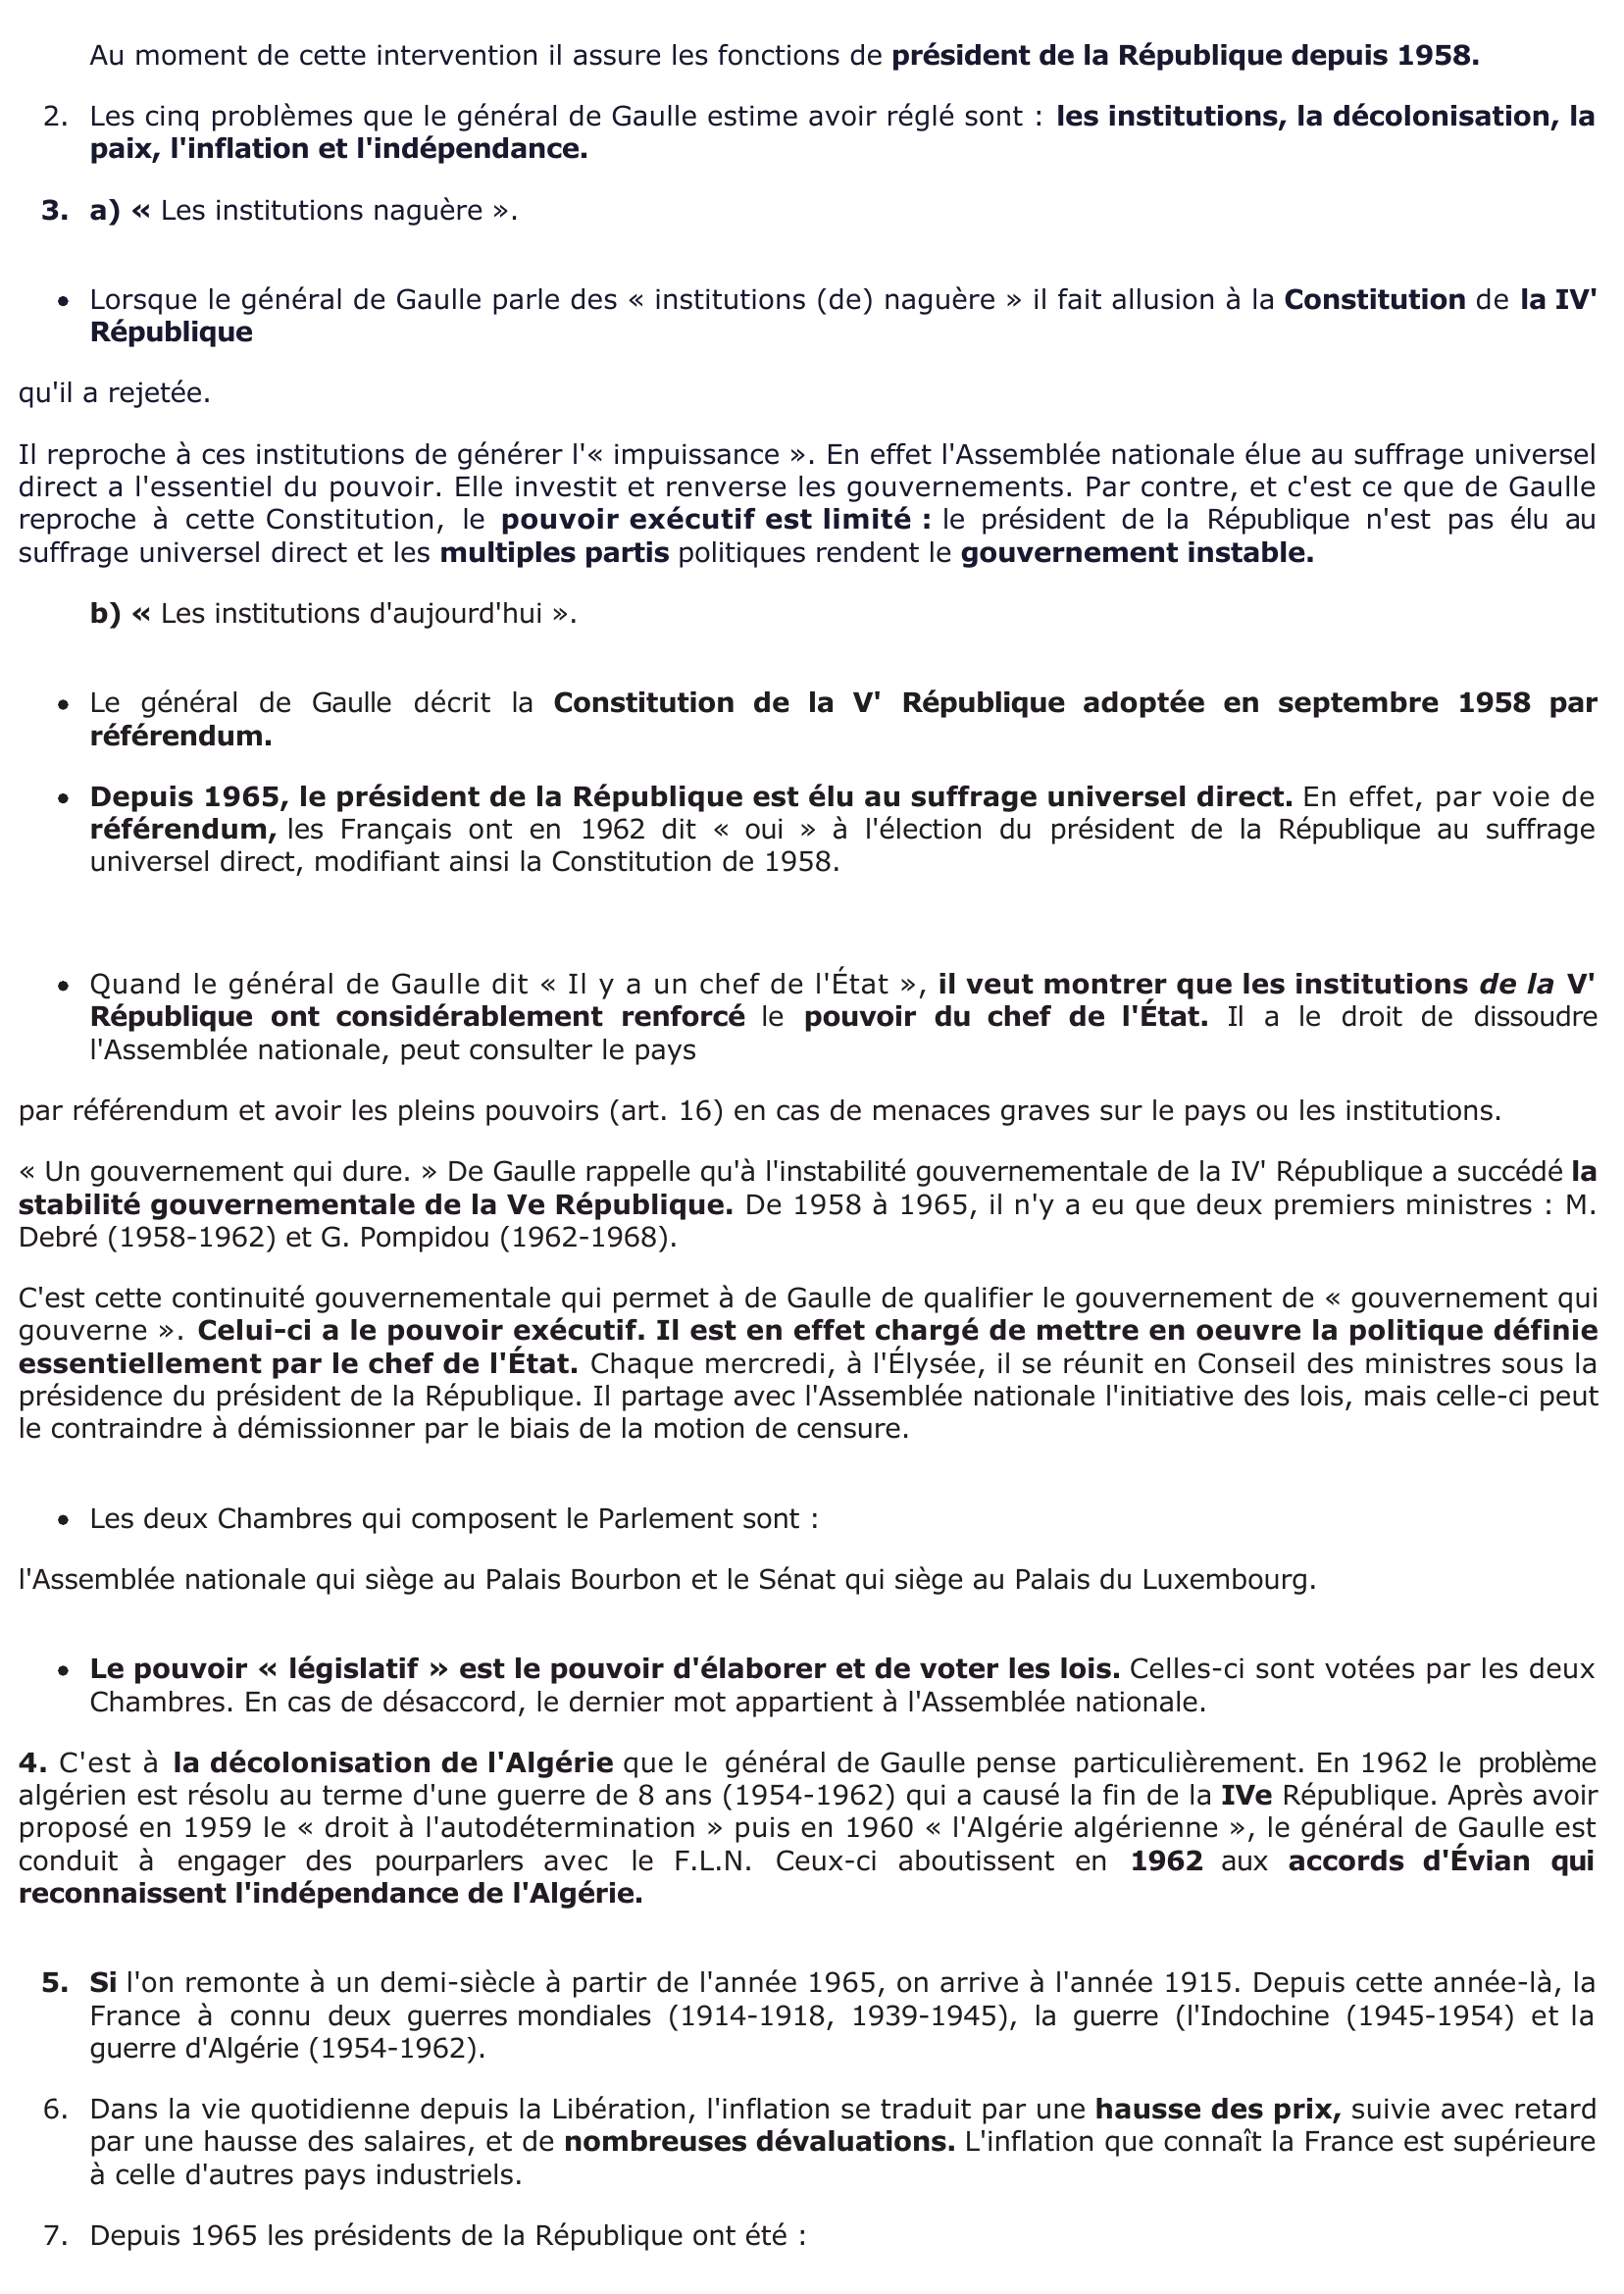 Prévisualisation du document Intervention radiotélévisée du général de Gaulle - 3 décembre 1965 - (avant les élections présidentielles)